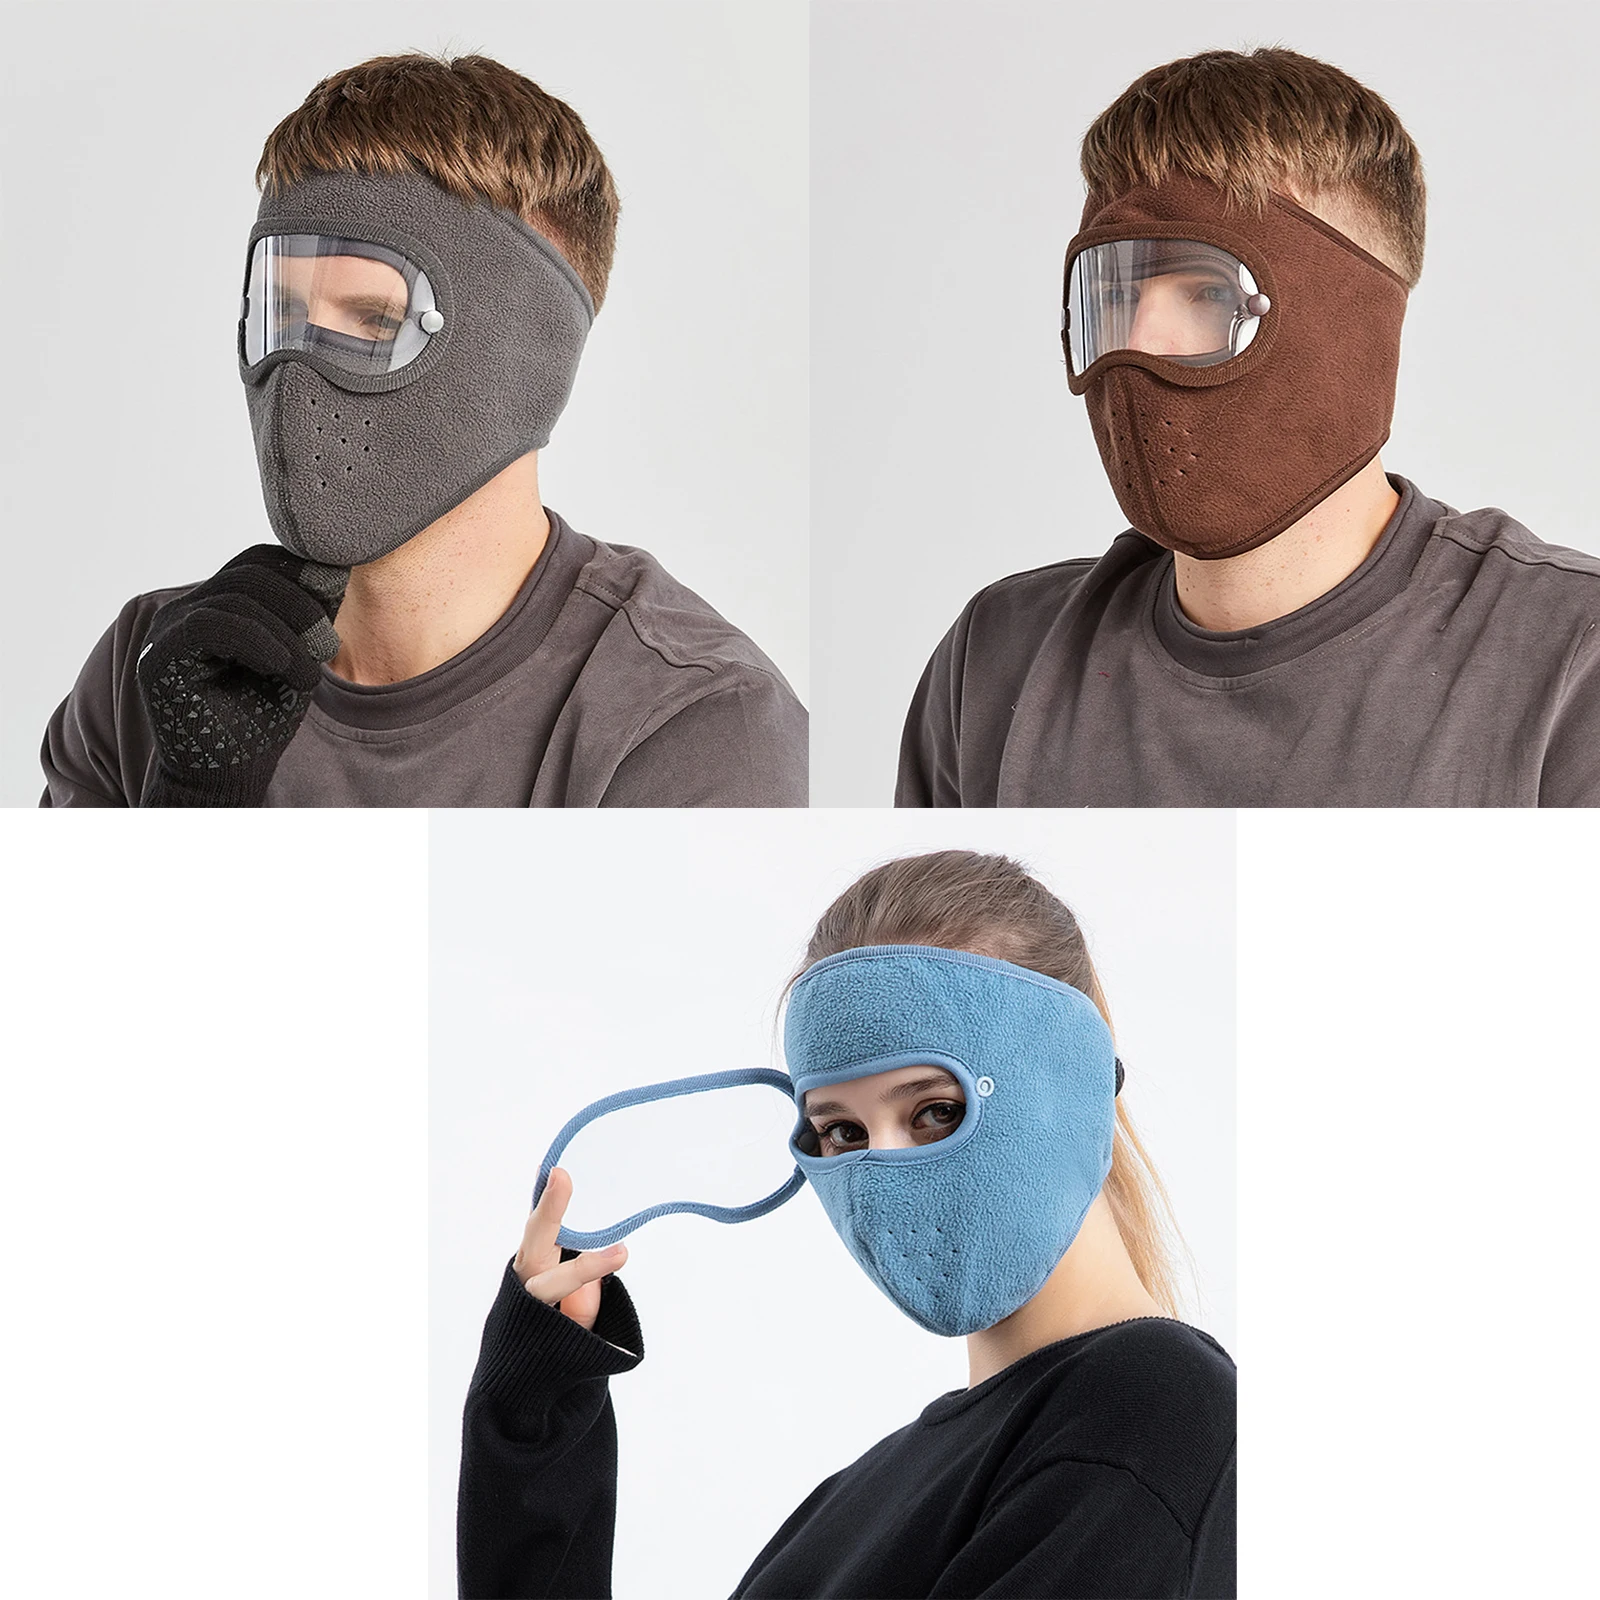 Dust-Proof Full Face Guard Headgear Anti-Fog Winter Warm w/ Goggles Skiing